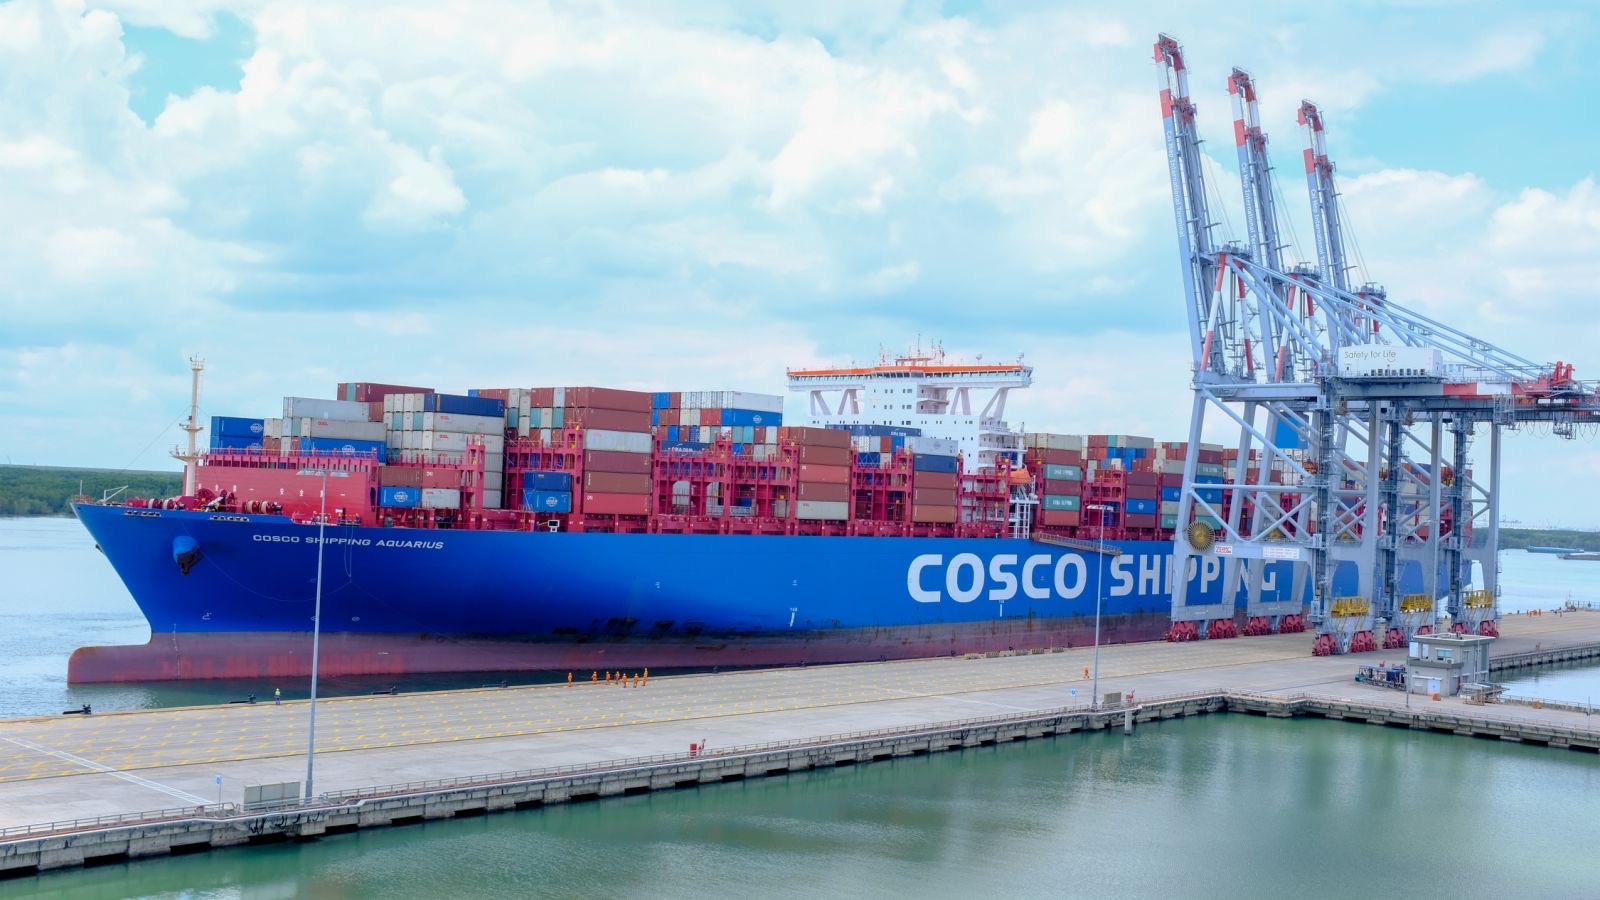   &quot;Siêu tàu &quot; Cosco Shipping Aquarius trọng tải 197.049 DWT (tương đương 20.119 TEU) là tàu có sức chở lớn nhất từng cập cảng Việt Nam đã tiếp nhận hàng hóa tại Cát Lái  ngày 7-8/9 vừa qua. Ảnh: CMIT